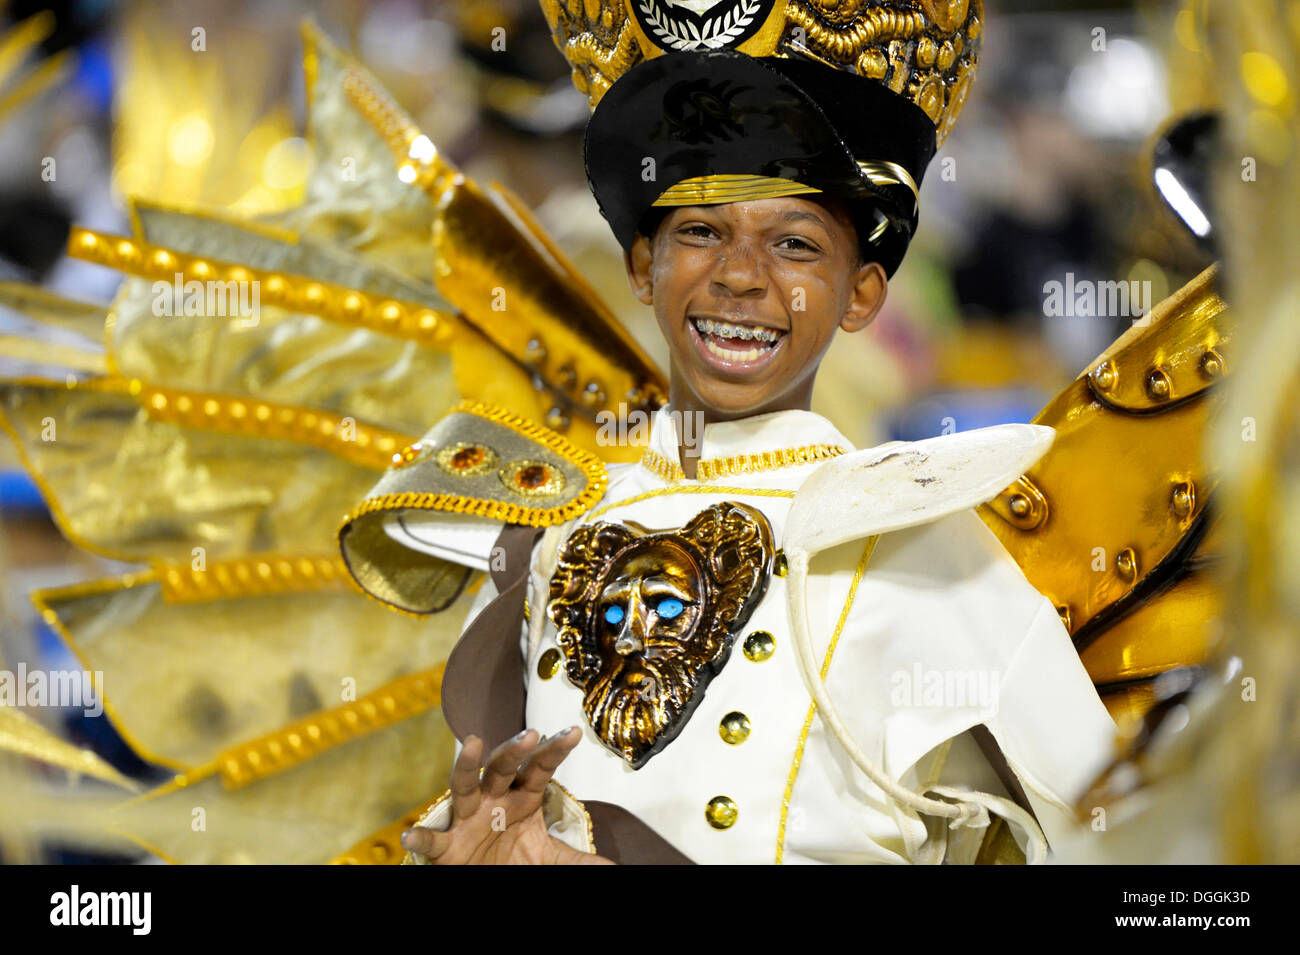 Boy, taking part in the parade of the Academicos do Grande Rio samba school during the Carnival in Rio de Janeiro in 2013 Stock Photo